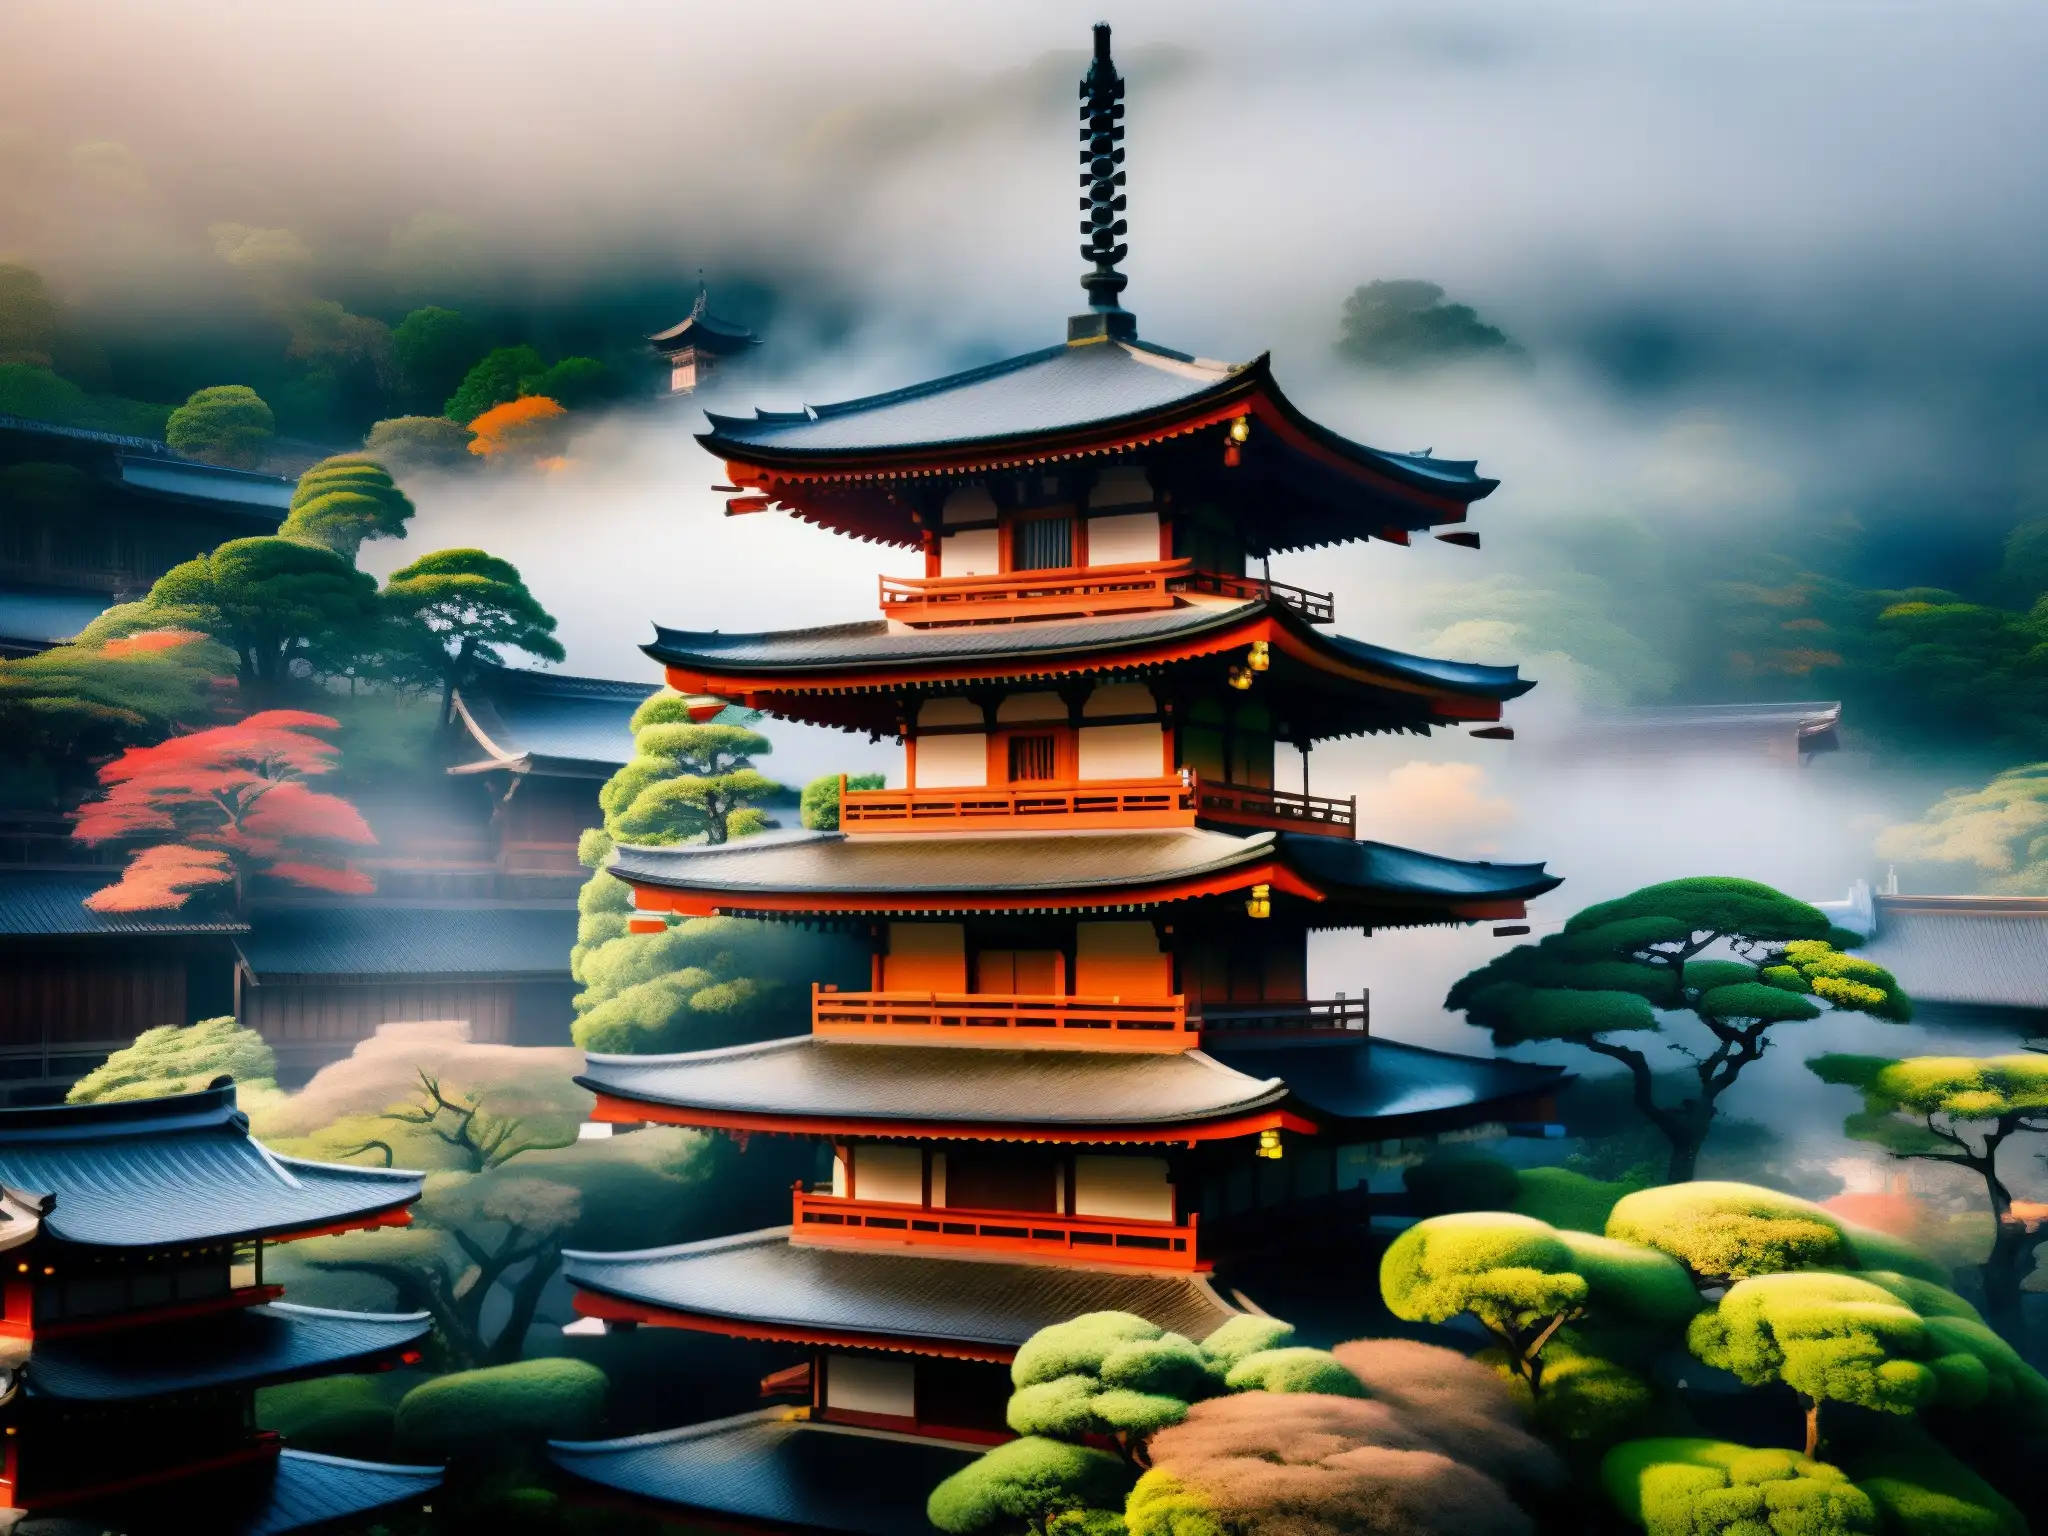 Misteriosa niebla rodea el templo Kiyomizudera en Kyoto, Japón, resaltando su arquitectura japonesa en un escenario de misterio y encanto